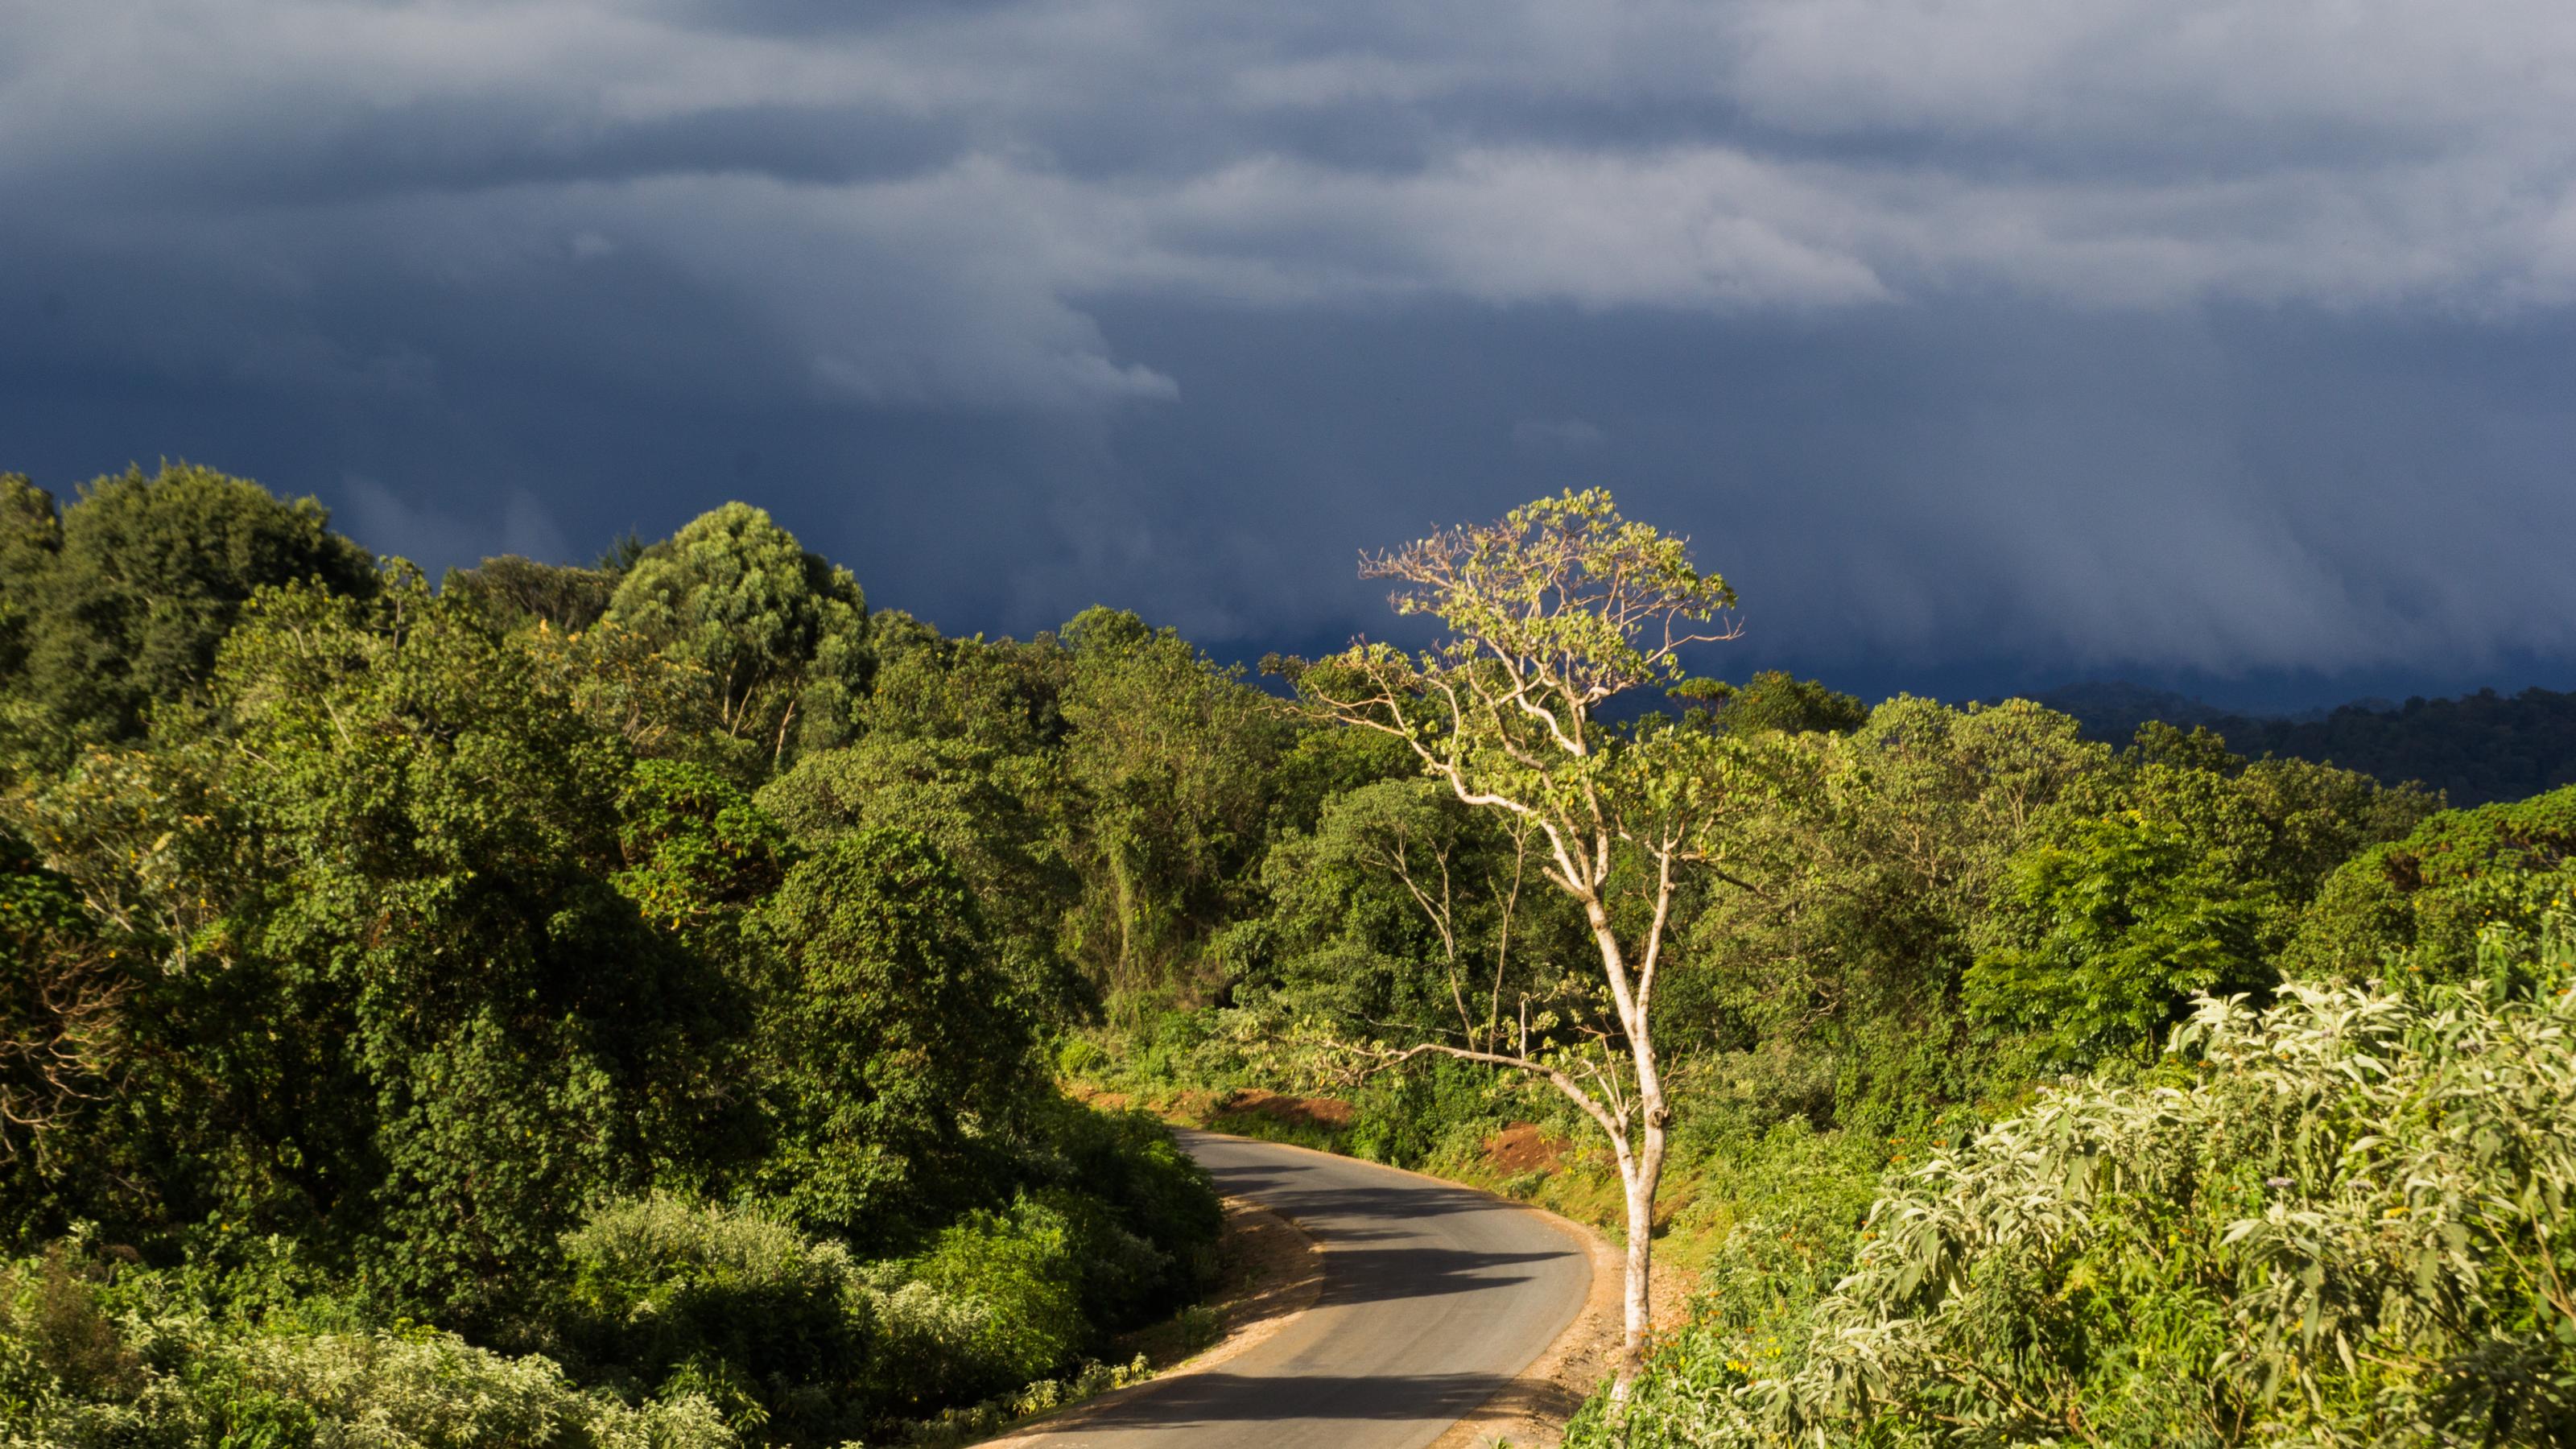 Eine asphaltierte Straße führt in dichten Wald, die Sonne steht noch auf Bäumen im Vordergrund. Hinten ziehen schwere Gewitterwolken auf.